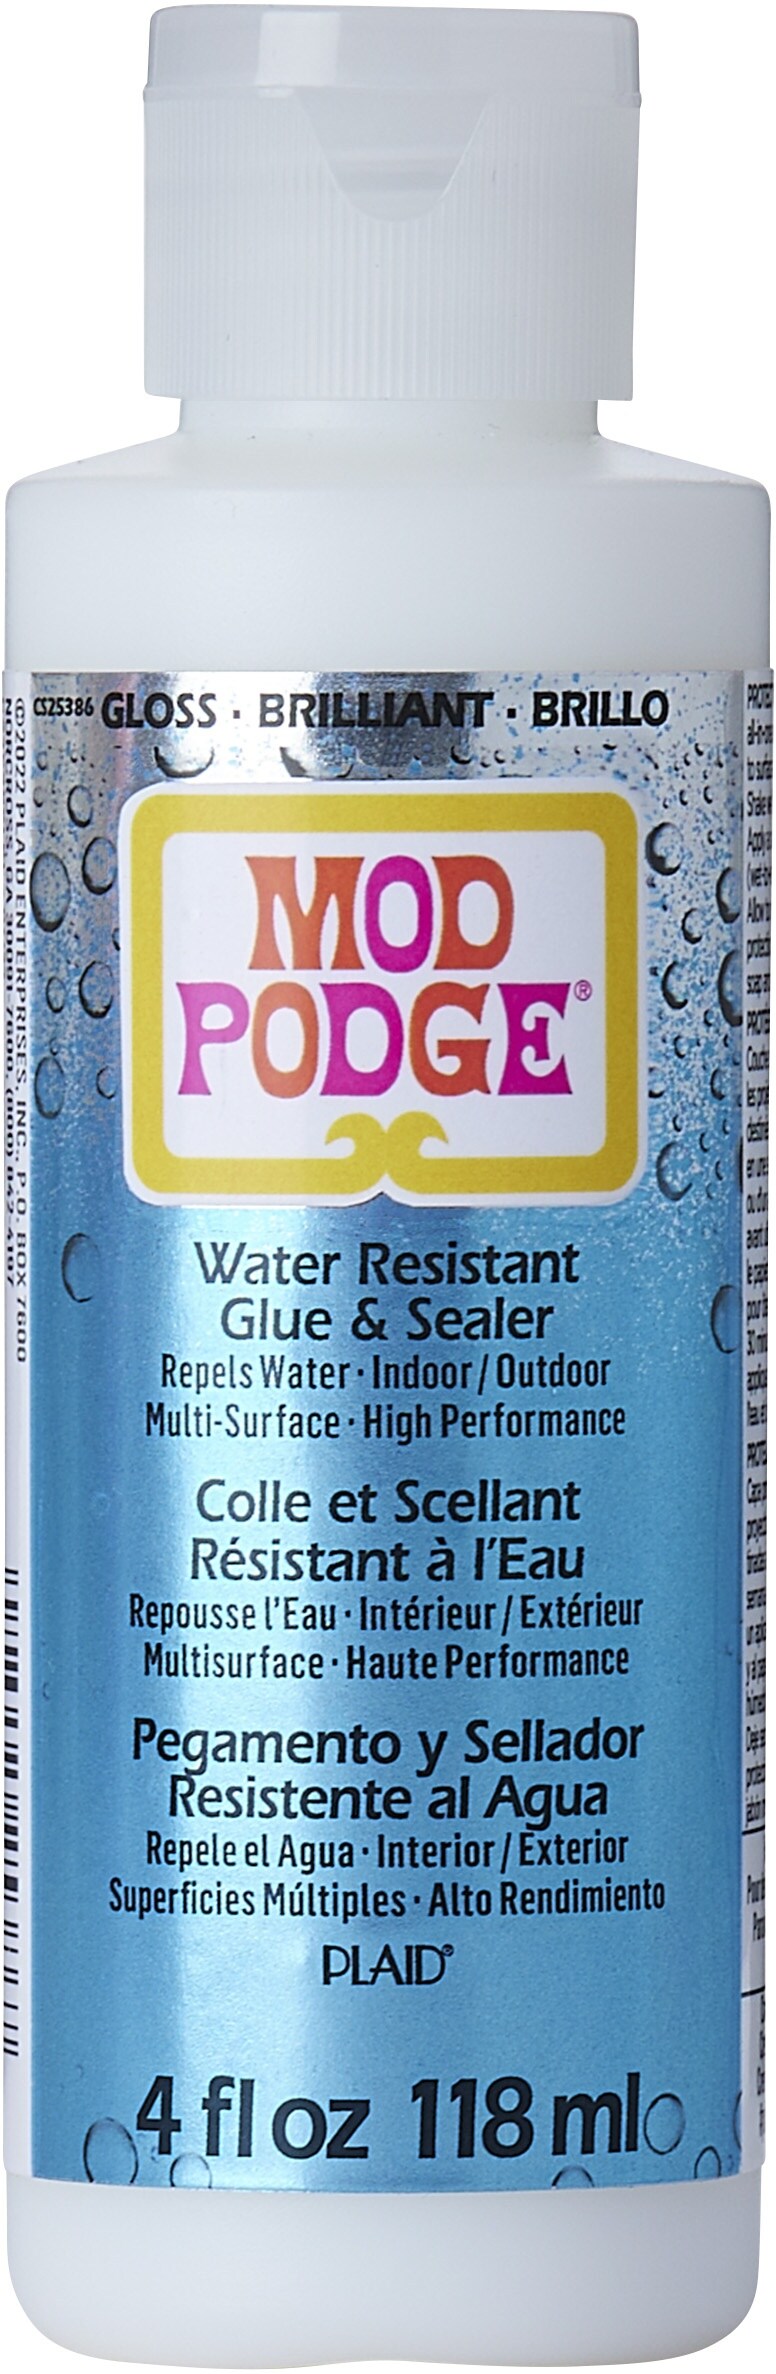 Mod Podge Water Resistant Sealer 4oz